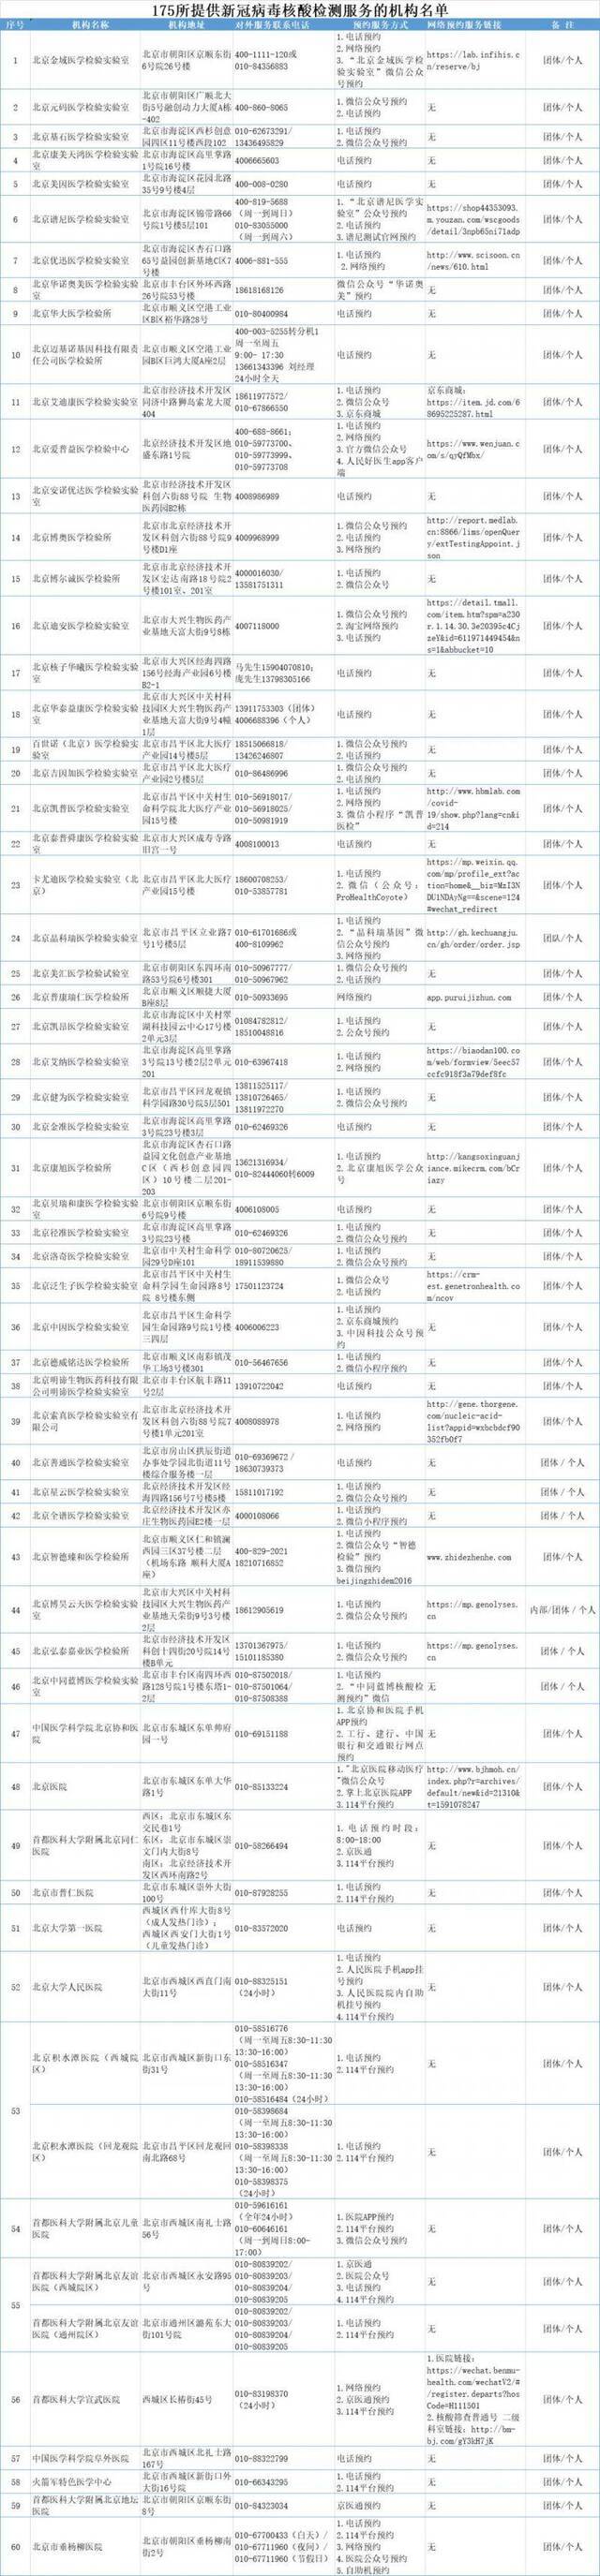 北京市公布175所提供新冠病毒核酸检测服务的医疗卫生机构名单